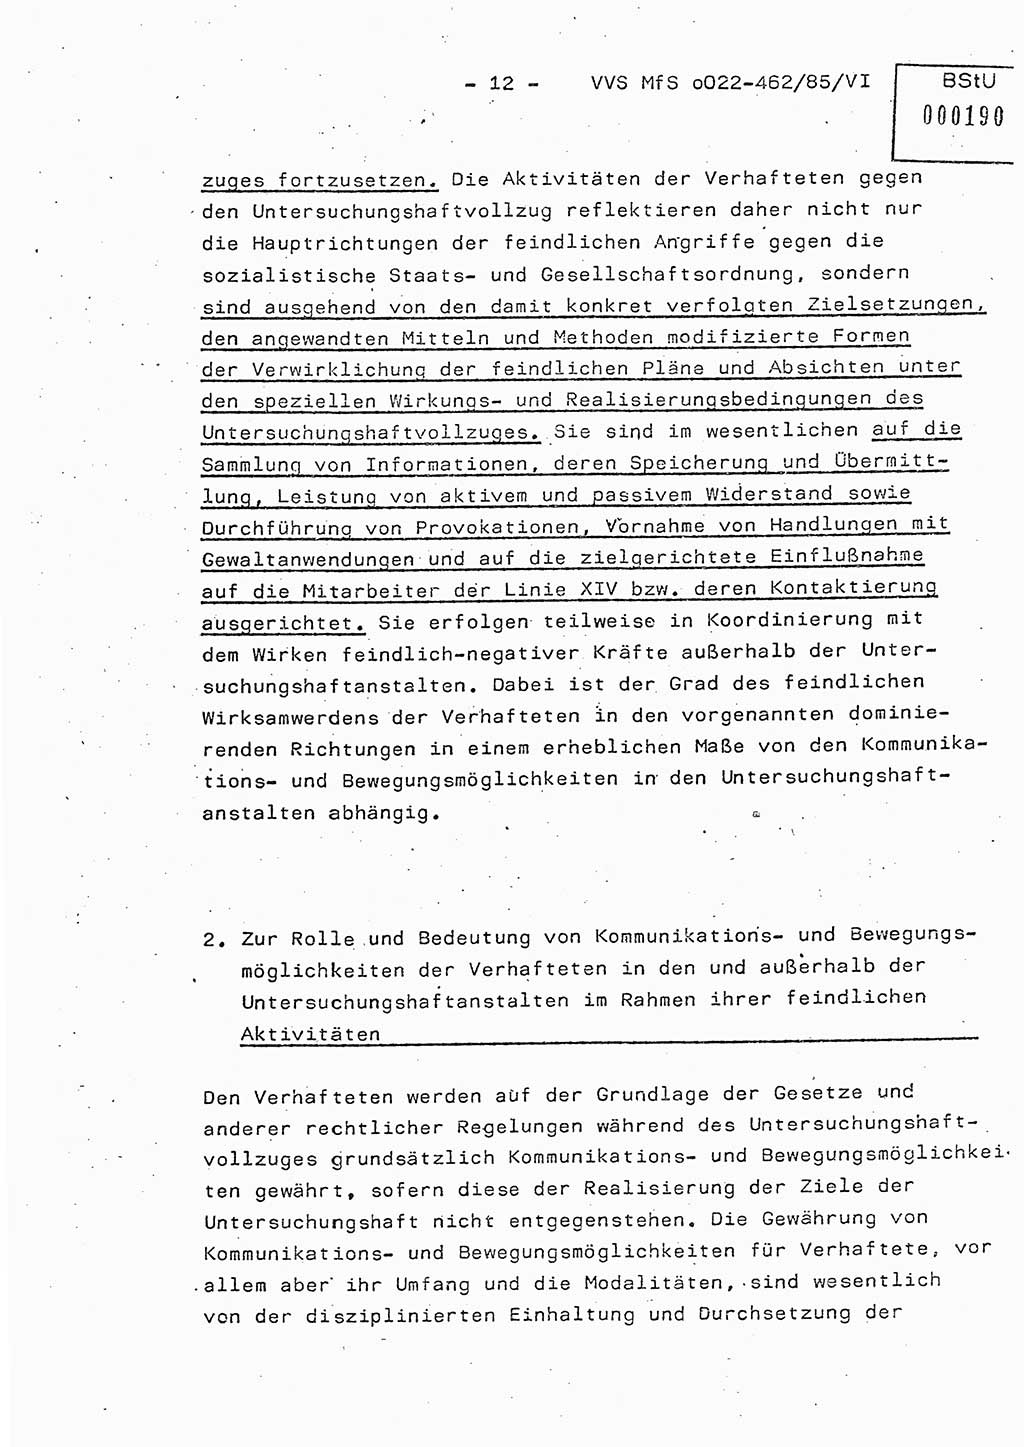 Der Untersuchungshaftvollzug im MfS, Schulungsmaterial Teil Ⅵ, Ministerium für Staatssicherheit [Deutsche Demokratische Republik (DDR)], Abteilung (Abt.) ⅩⅣ, Vertrauliche Verschlußsache (VVS) o022-462/85/Ⅵ, Berlin 1985, Seite 12 (Sch.-Mat. Ⅵ MfS DDR Abt. ⅩⅣ VVS o022-462/85/Ⅵ 1985, S. 12)